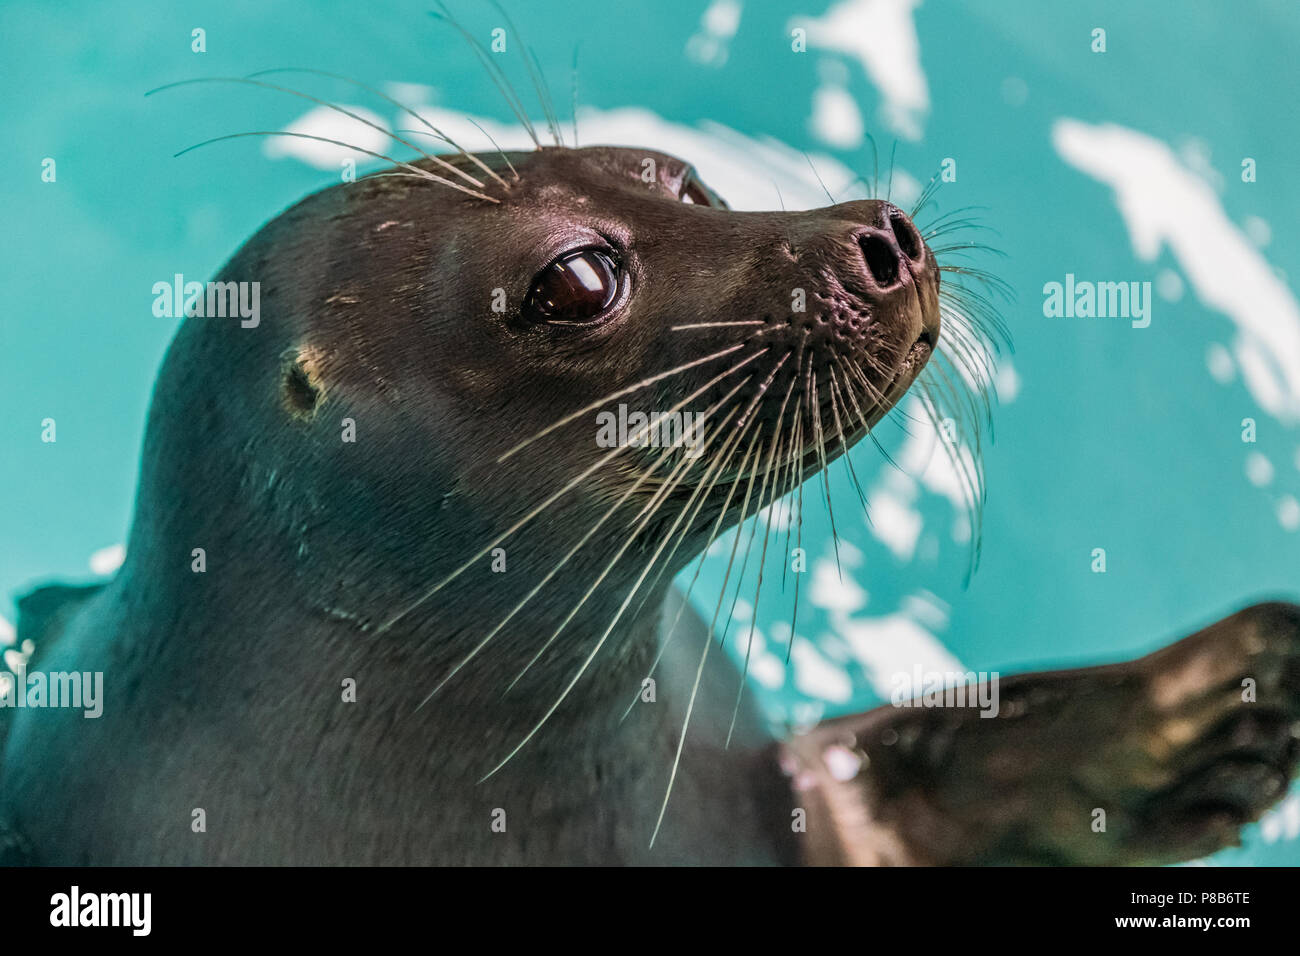 Close-up view of sea lion adorable en bleu de l'eau, lac Baïkal, listvyanka, Russie Banque D'Images